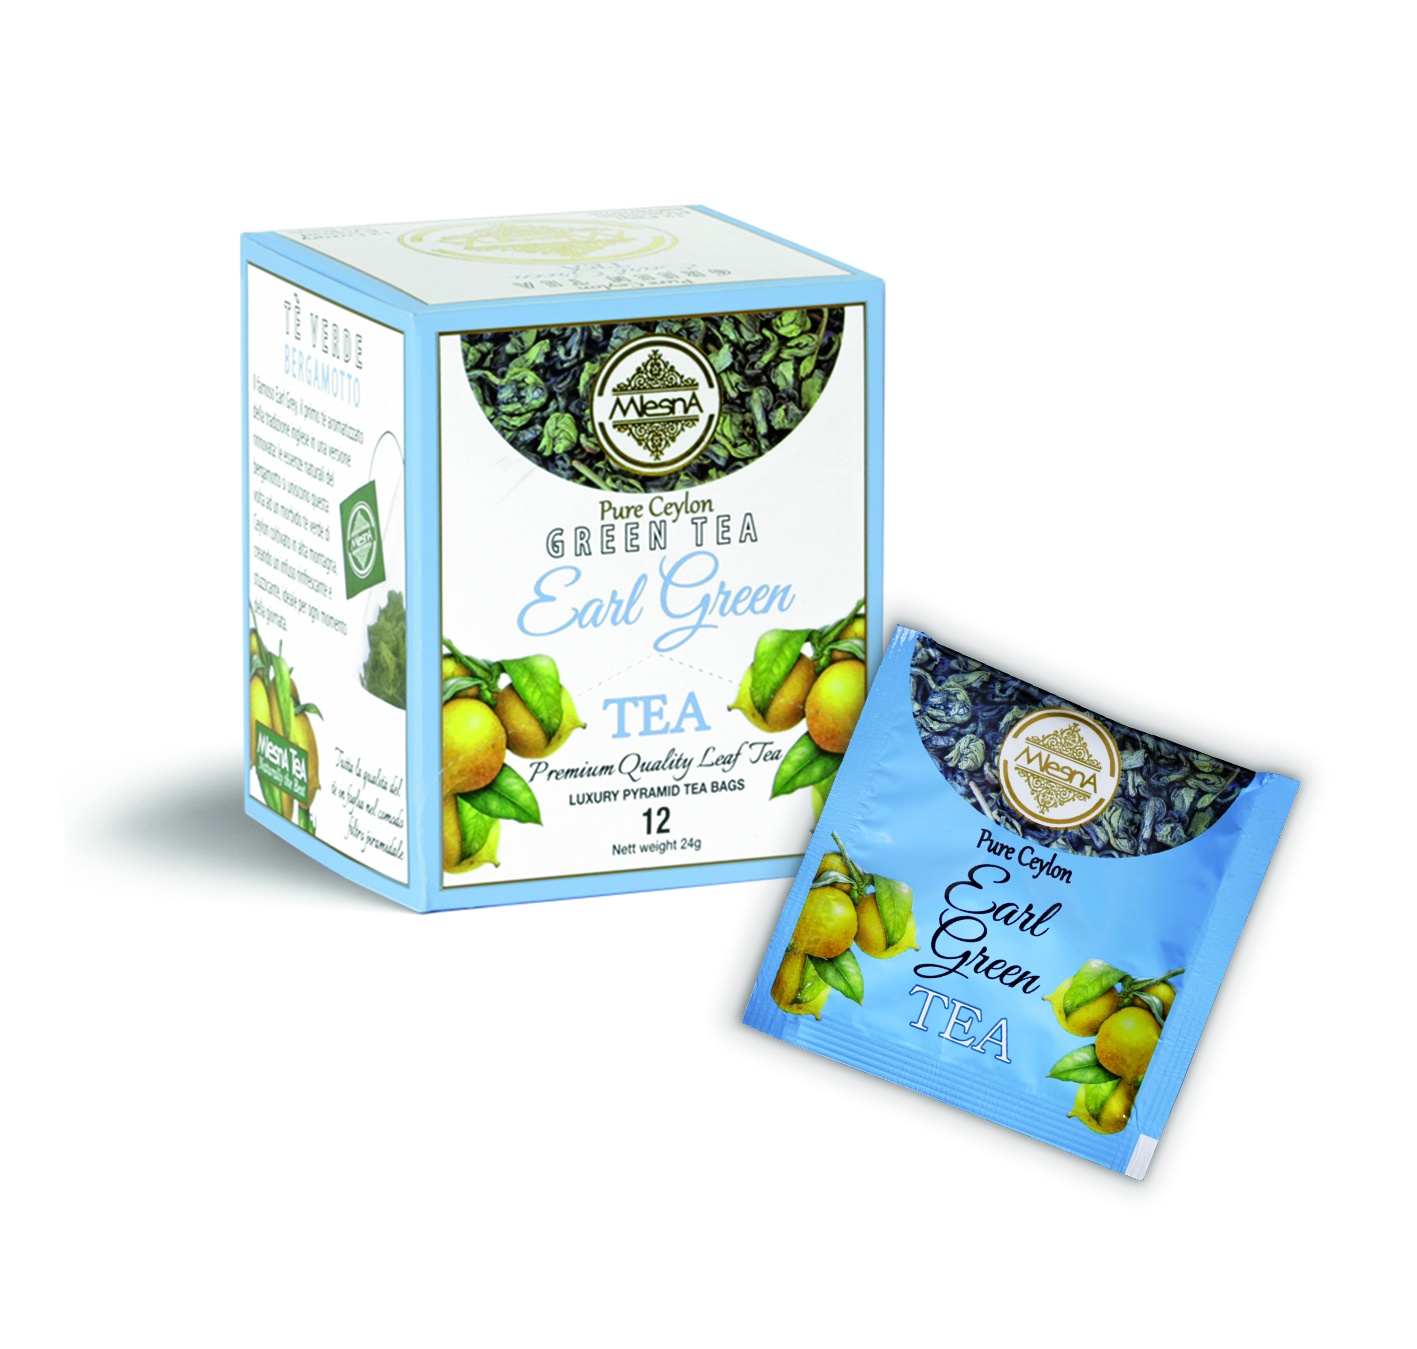 Čaje Mlesna Cejlonský zelený čaj nejvyšší kvality s přírodním extraktem soursopu MLESNA (Ceylon) Ltd. pravý čaj z Cejlonu